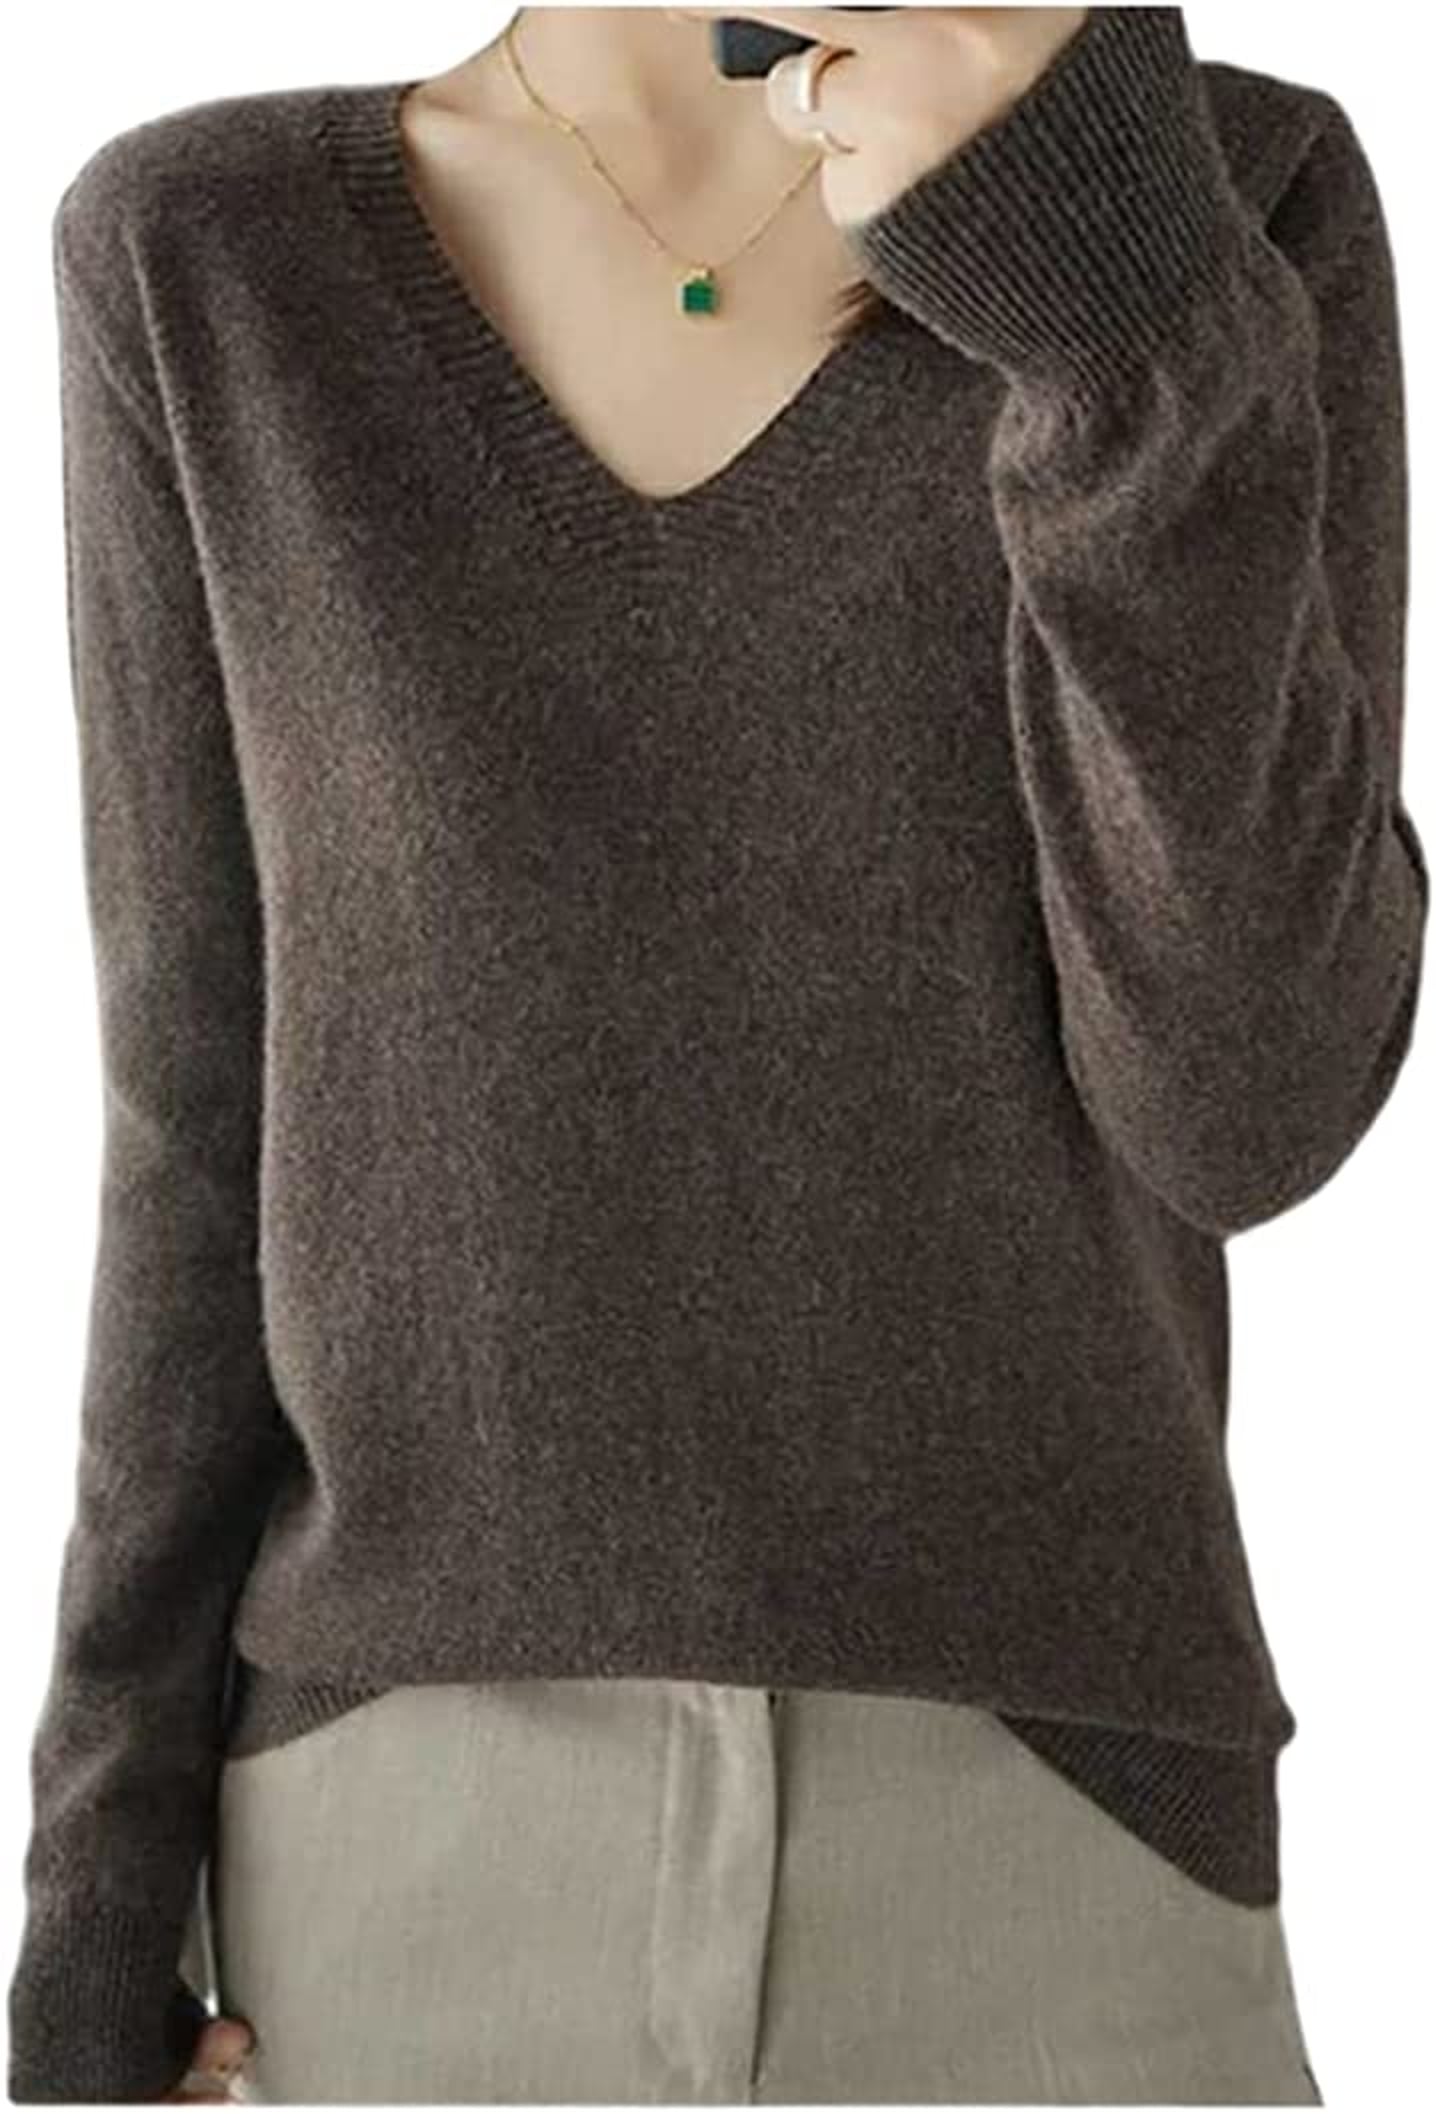 Best Amazon Sweaters Under $25 | POPSUGAR Fashion